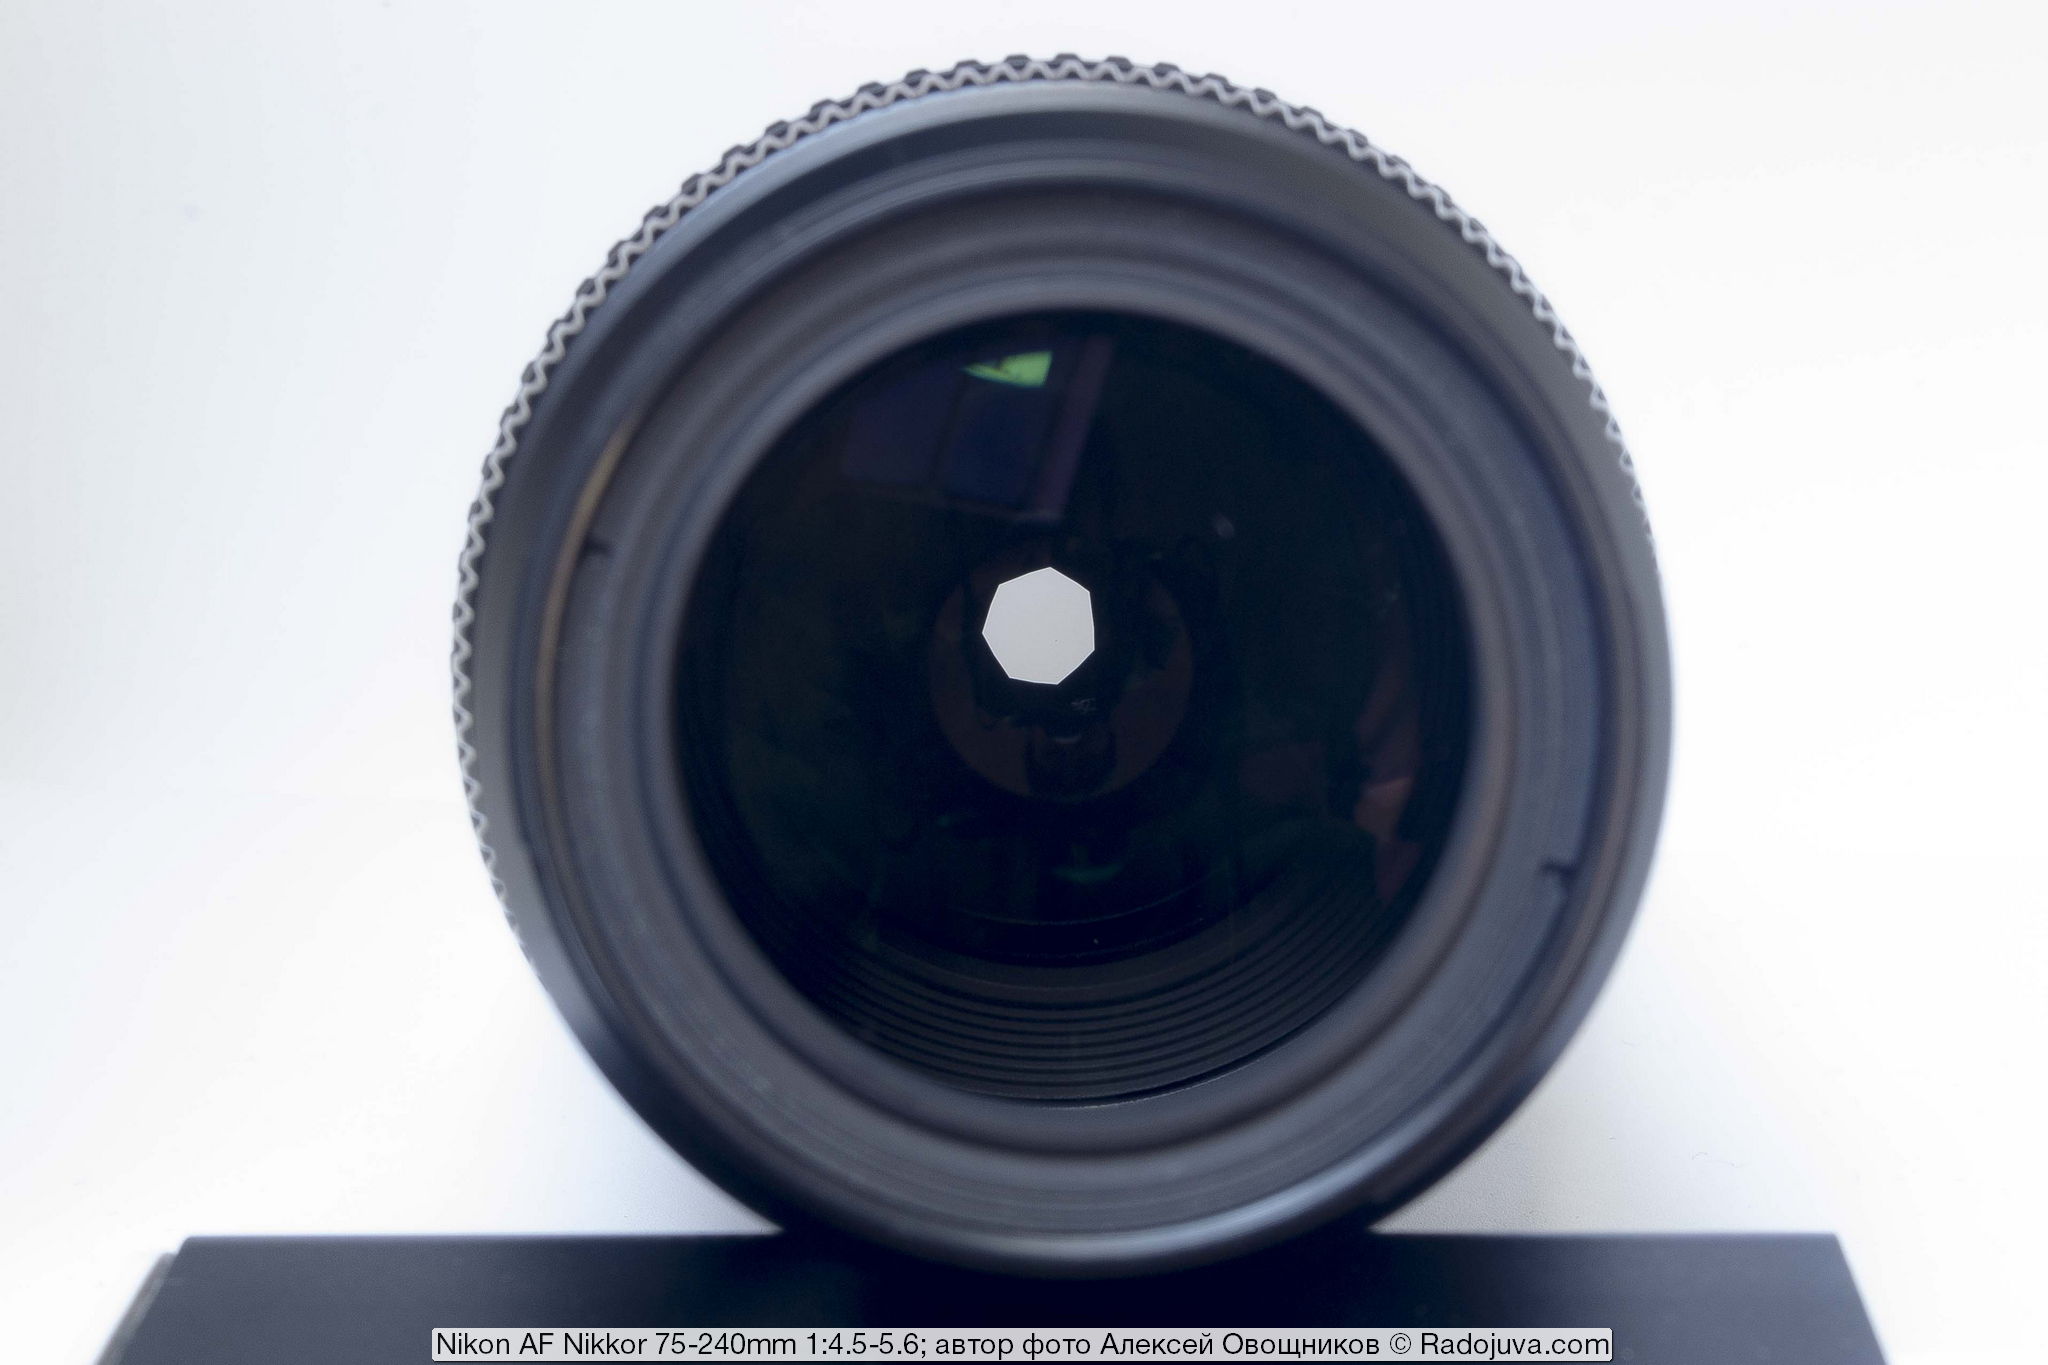 Nikon AF Nikkor 75-240mm 1:4.5-5.6